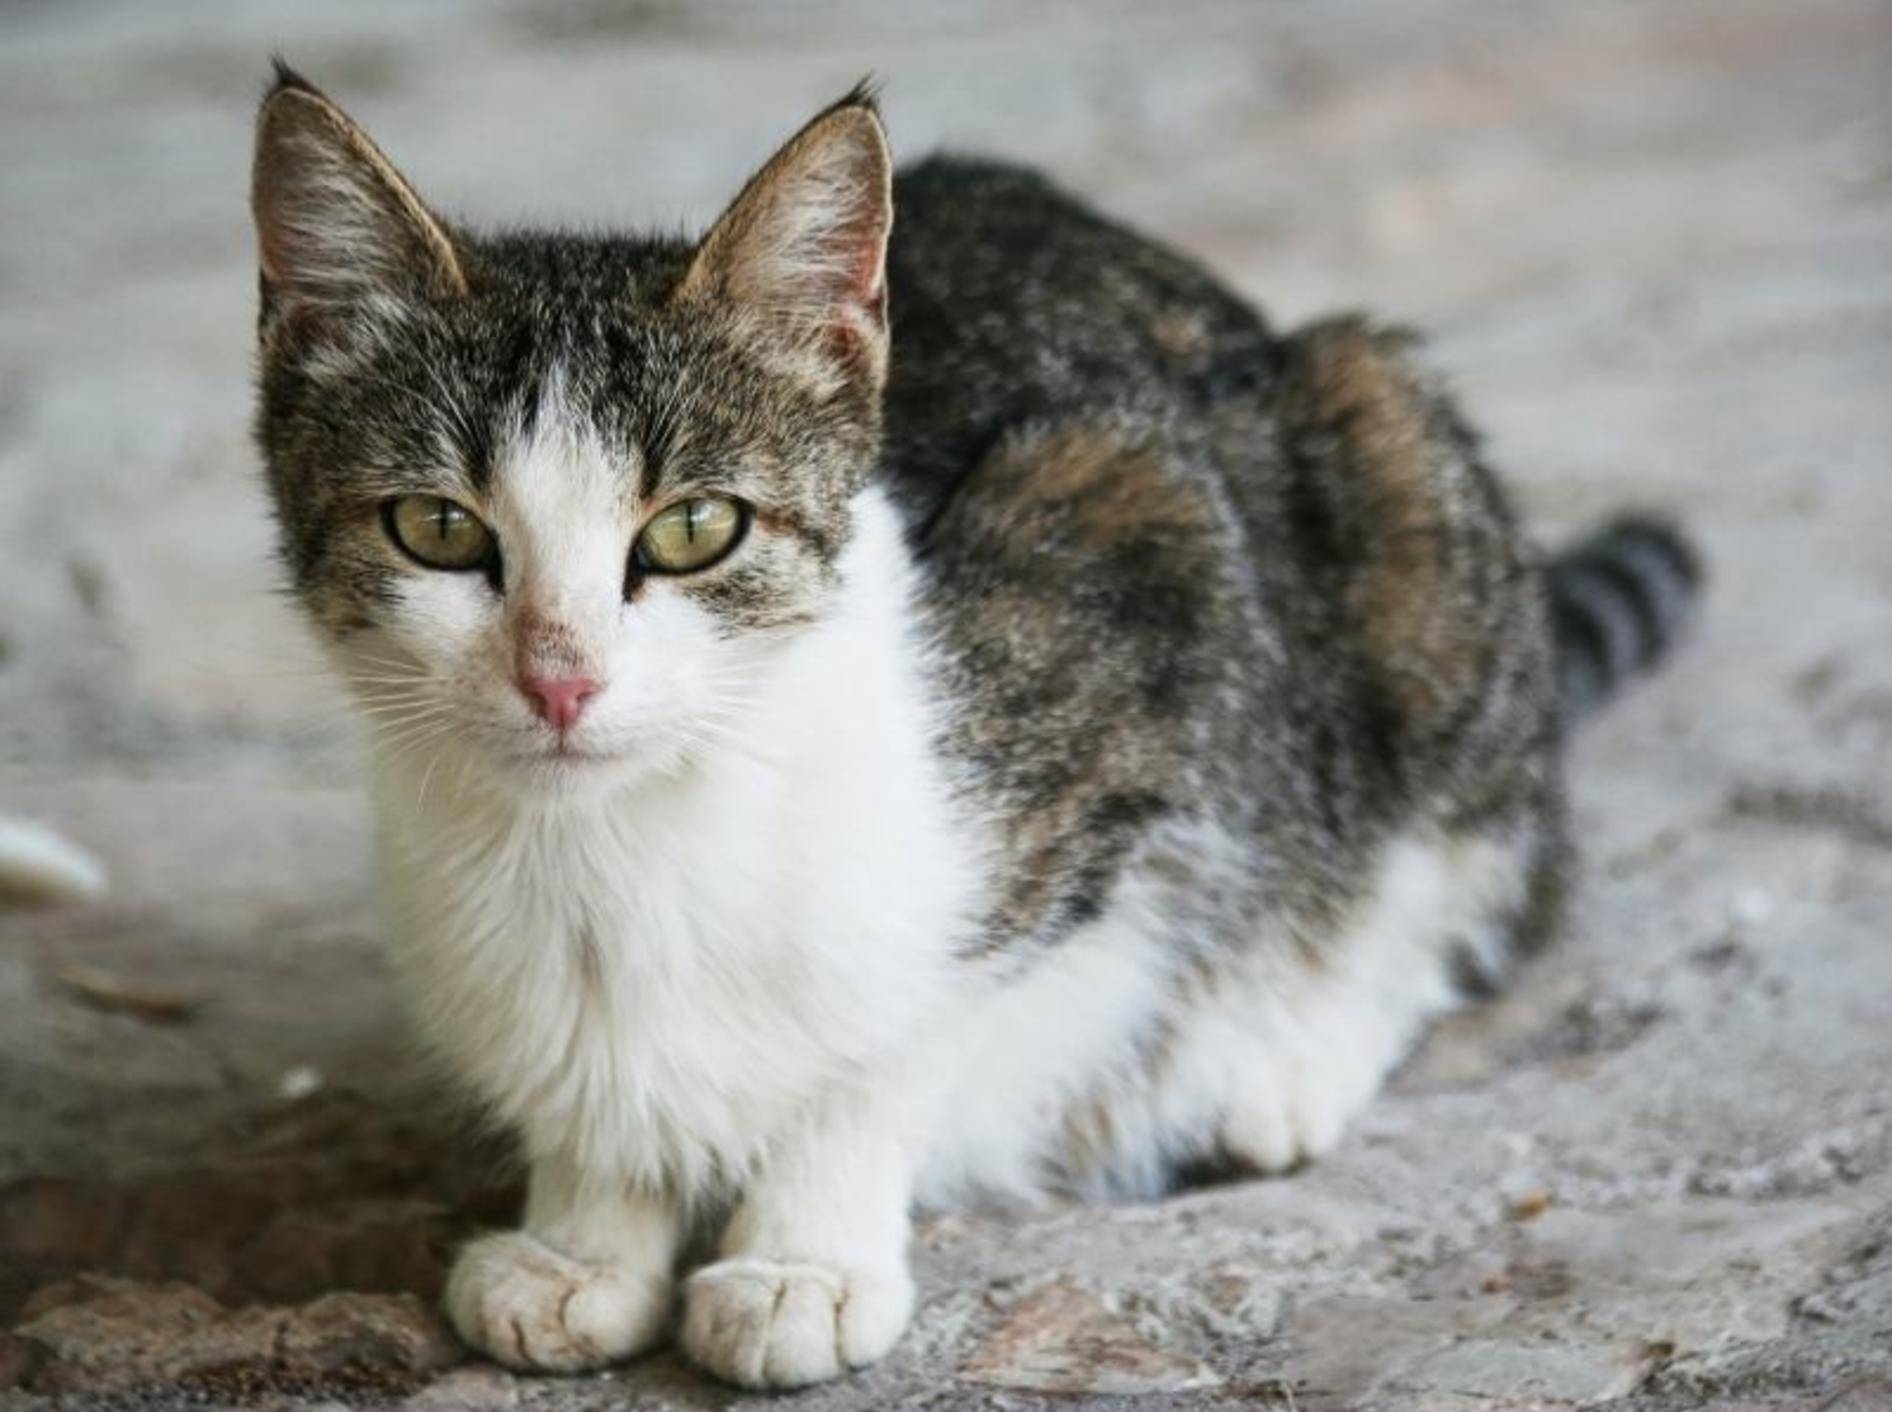 Liebe, Wärme und gesunde Ernährung helfen, um die Katze aufzupäppeln – Bild: Shutterstock / Lenar Musin